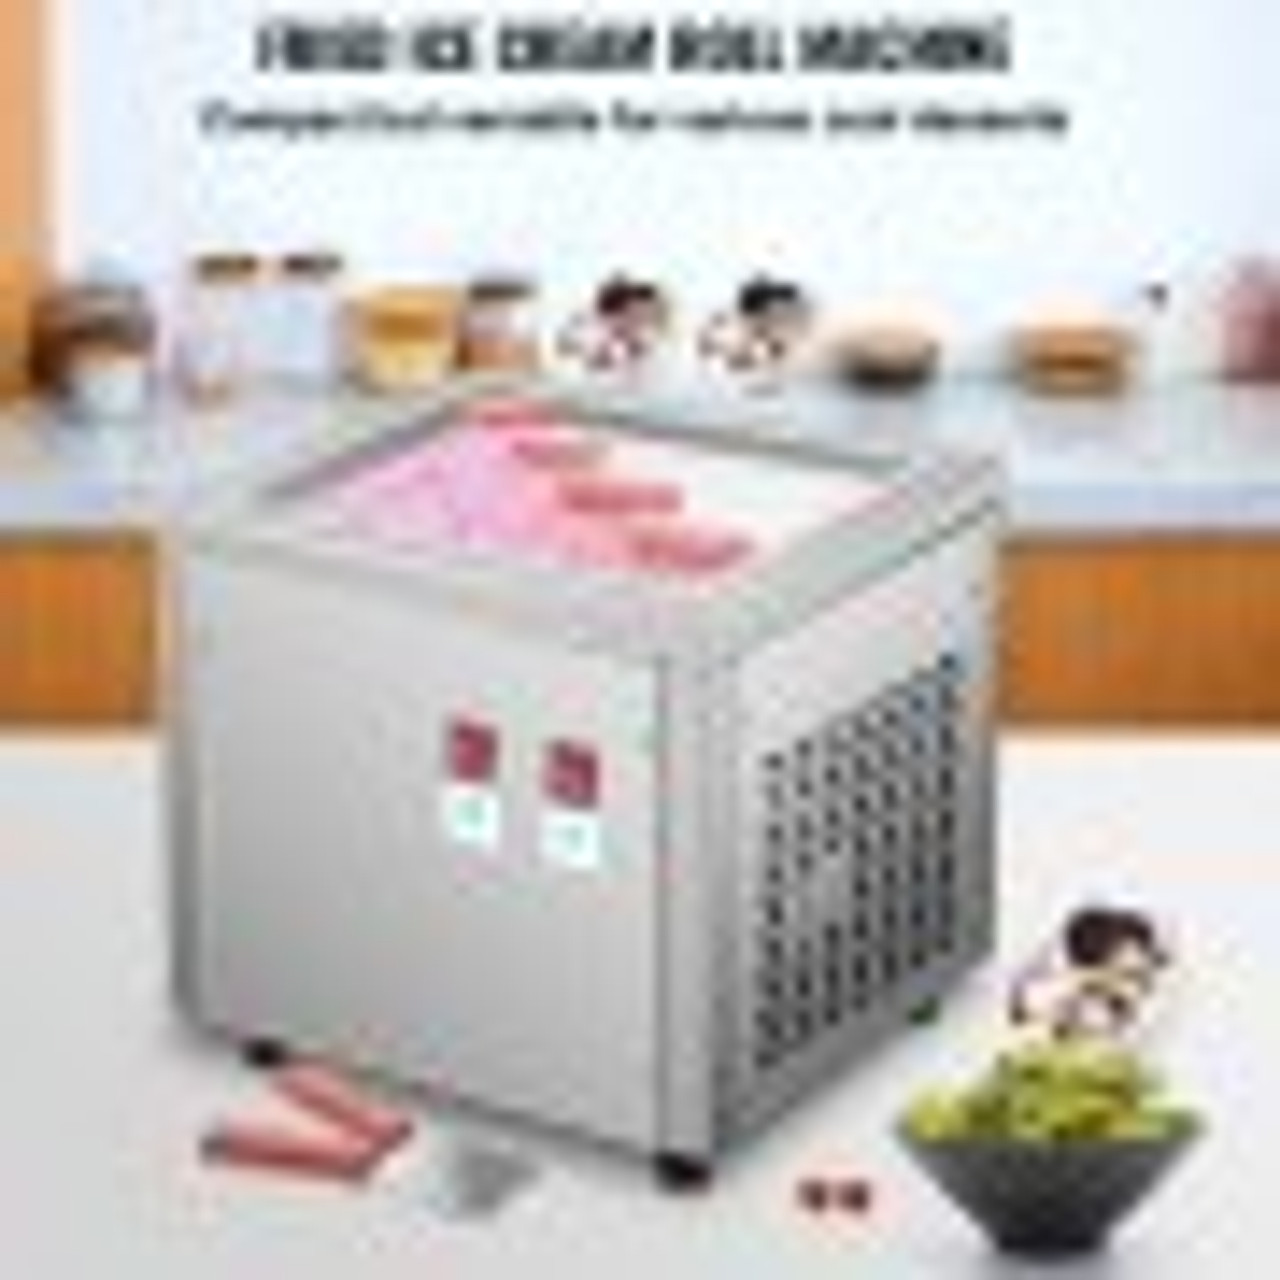 Best Ice Cream Roll Ice Cream Machine – WM machinery